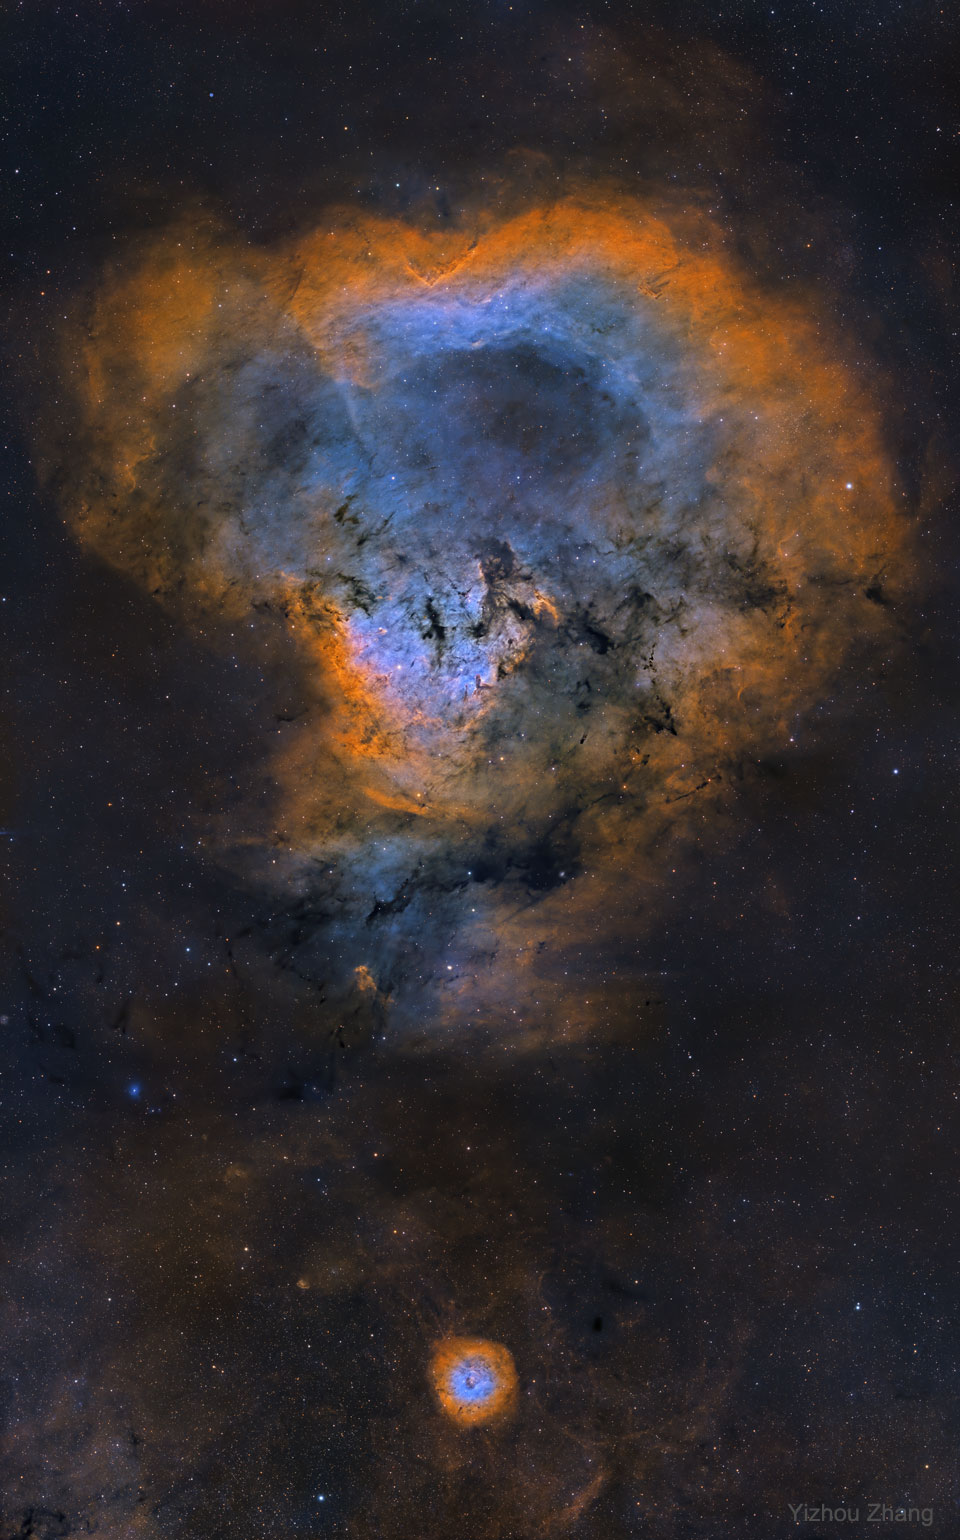 图为 NGC 7822，非正式地称为宇宙问号星云。有关更多详细信息，请参阅说明。